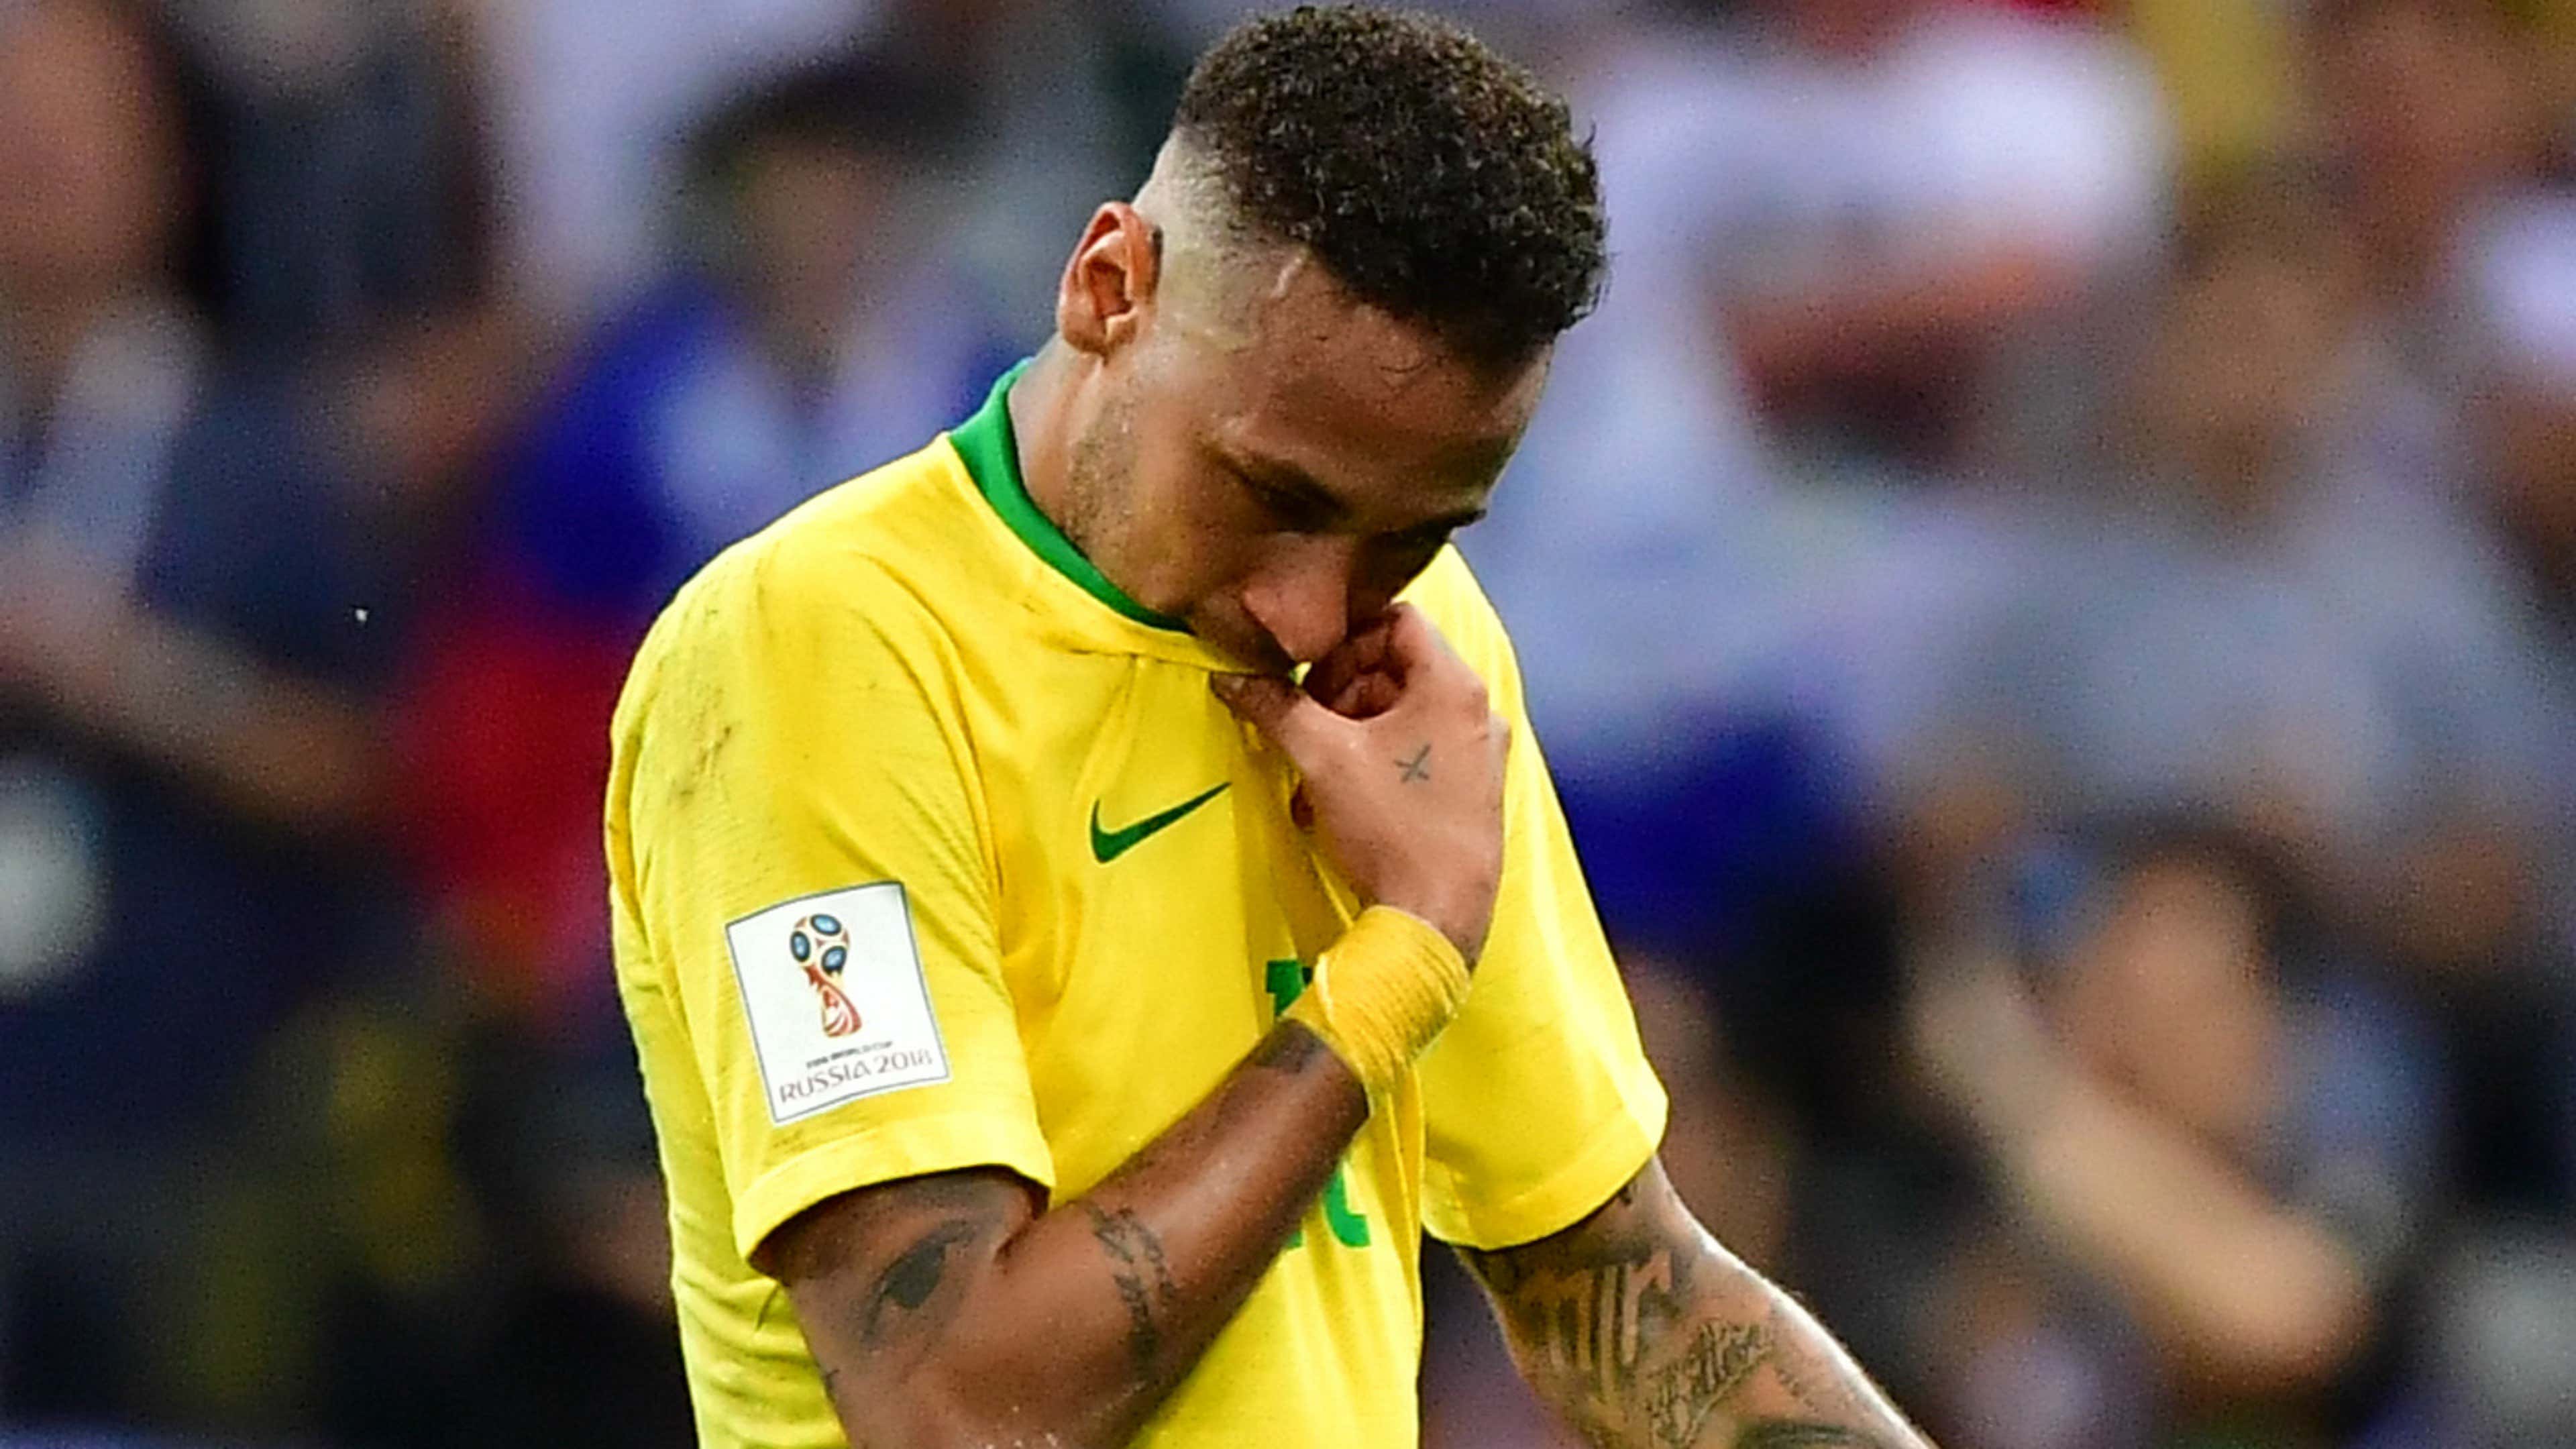 Neymar Brazil 2018